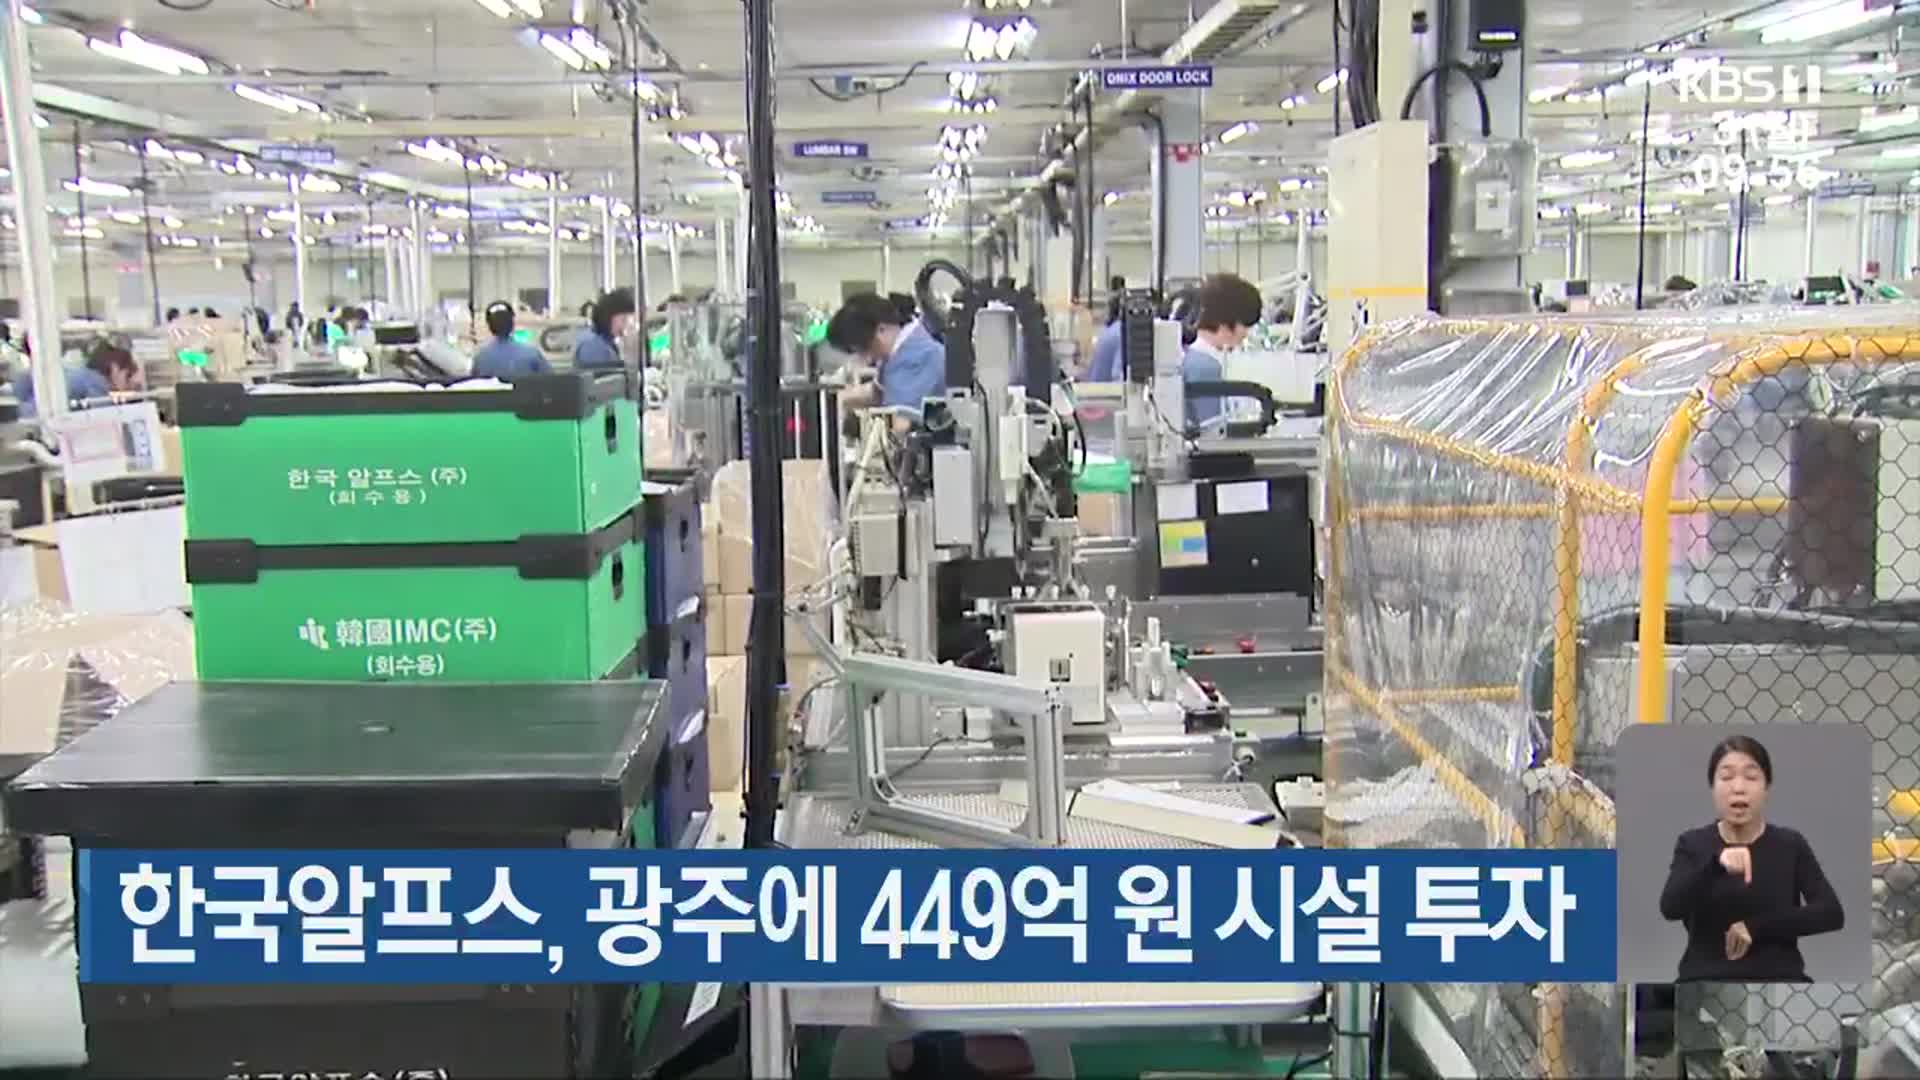 한국알프스, 광주에 449억 원 시설 투자 